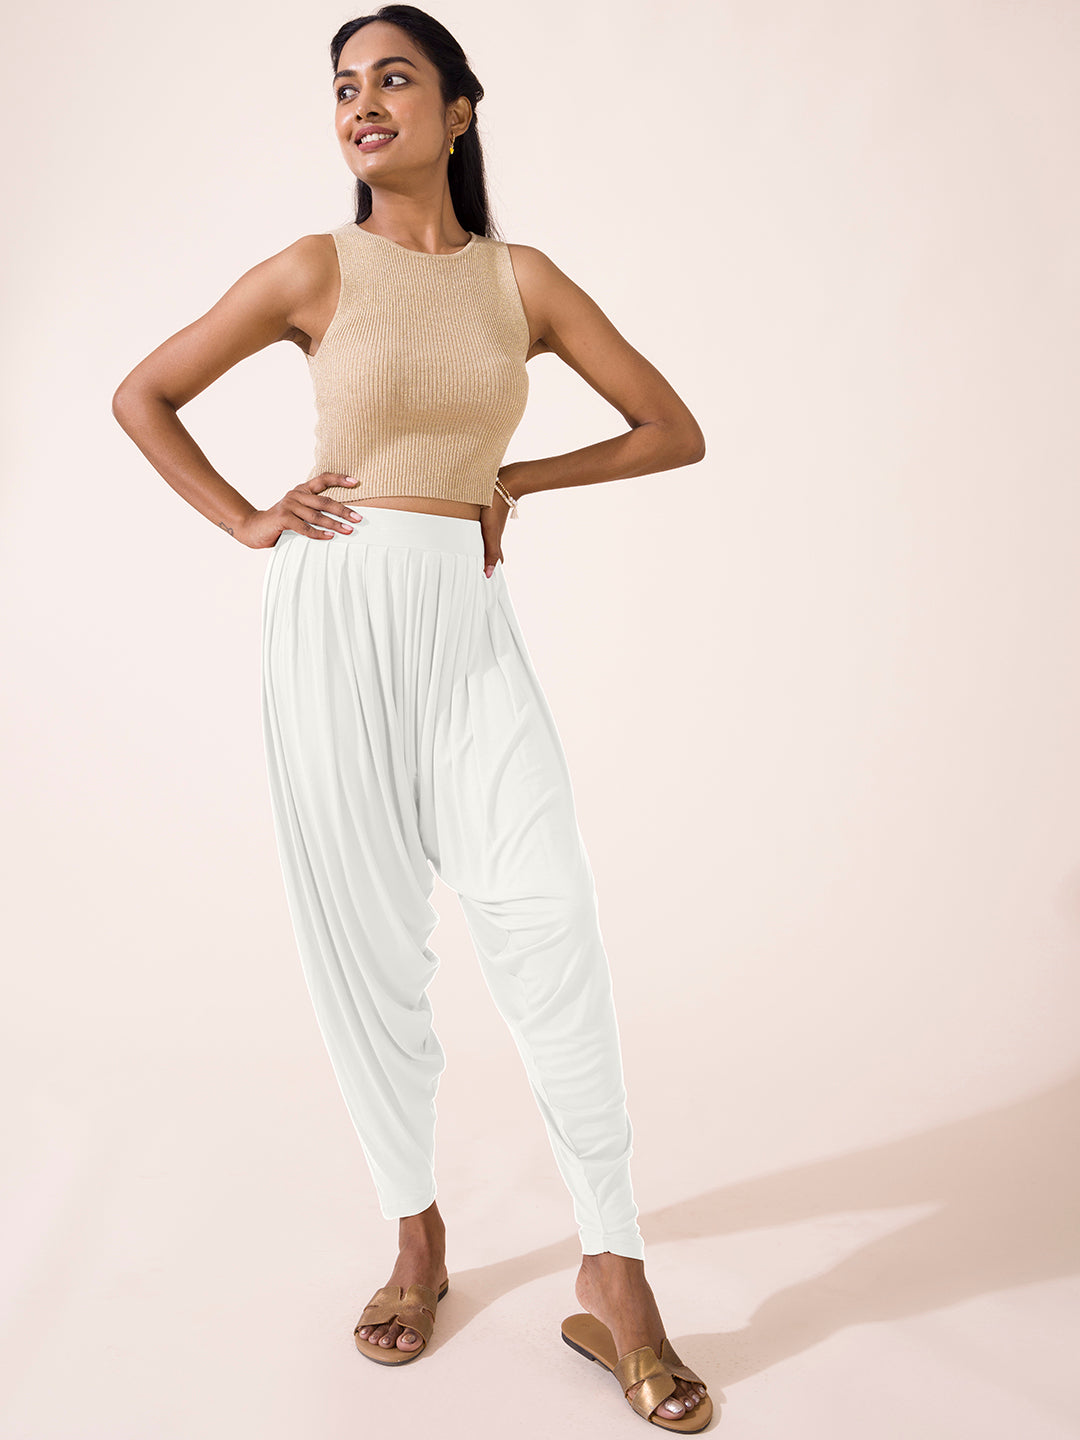 White Plain Color Indian Churidar Pants 100% Cotton-Tights Kurti Salwar  Kameez | eBay